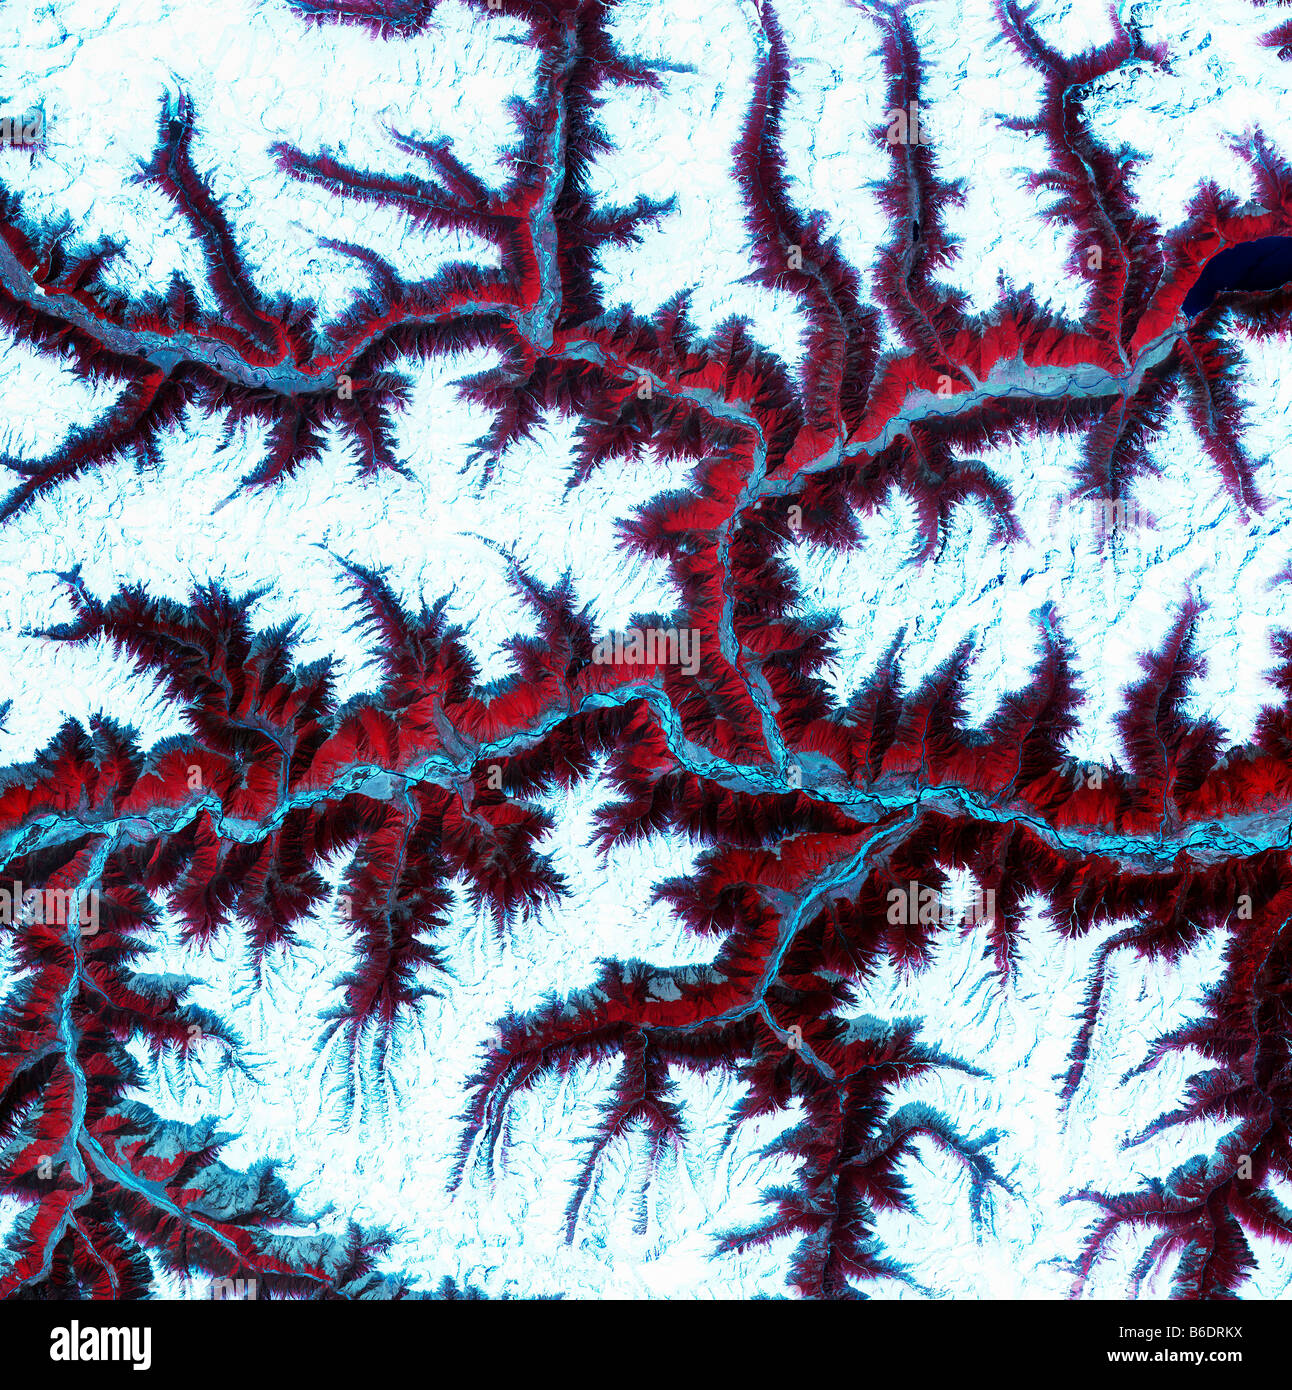 El Himalaya Oriental, imagen de satélite. El norte se encuentra en la parte superior. La nieve es blanca, la vegetación es roja, barrenareas son de color azul claro. Foto de stock